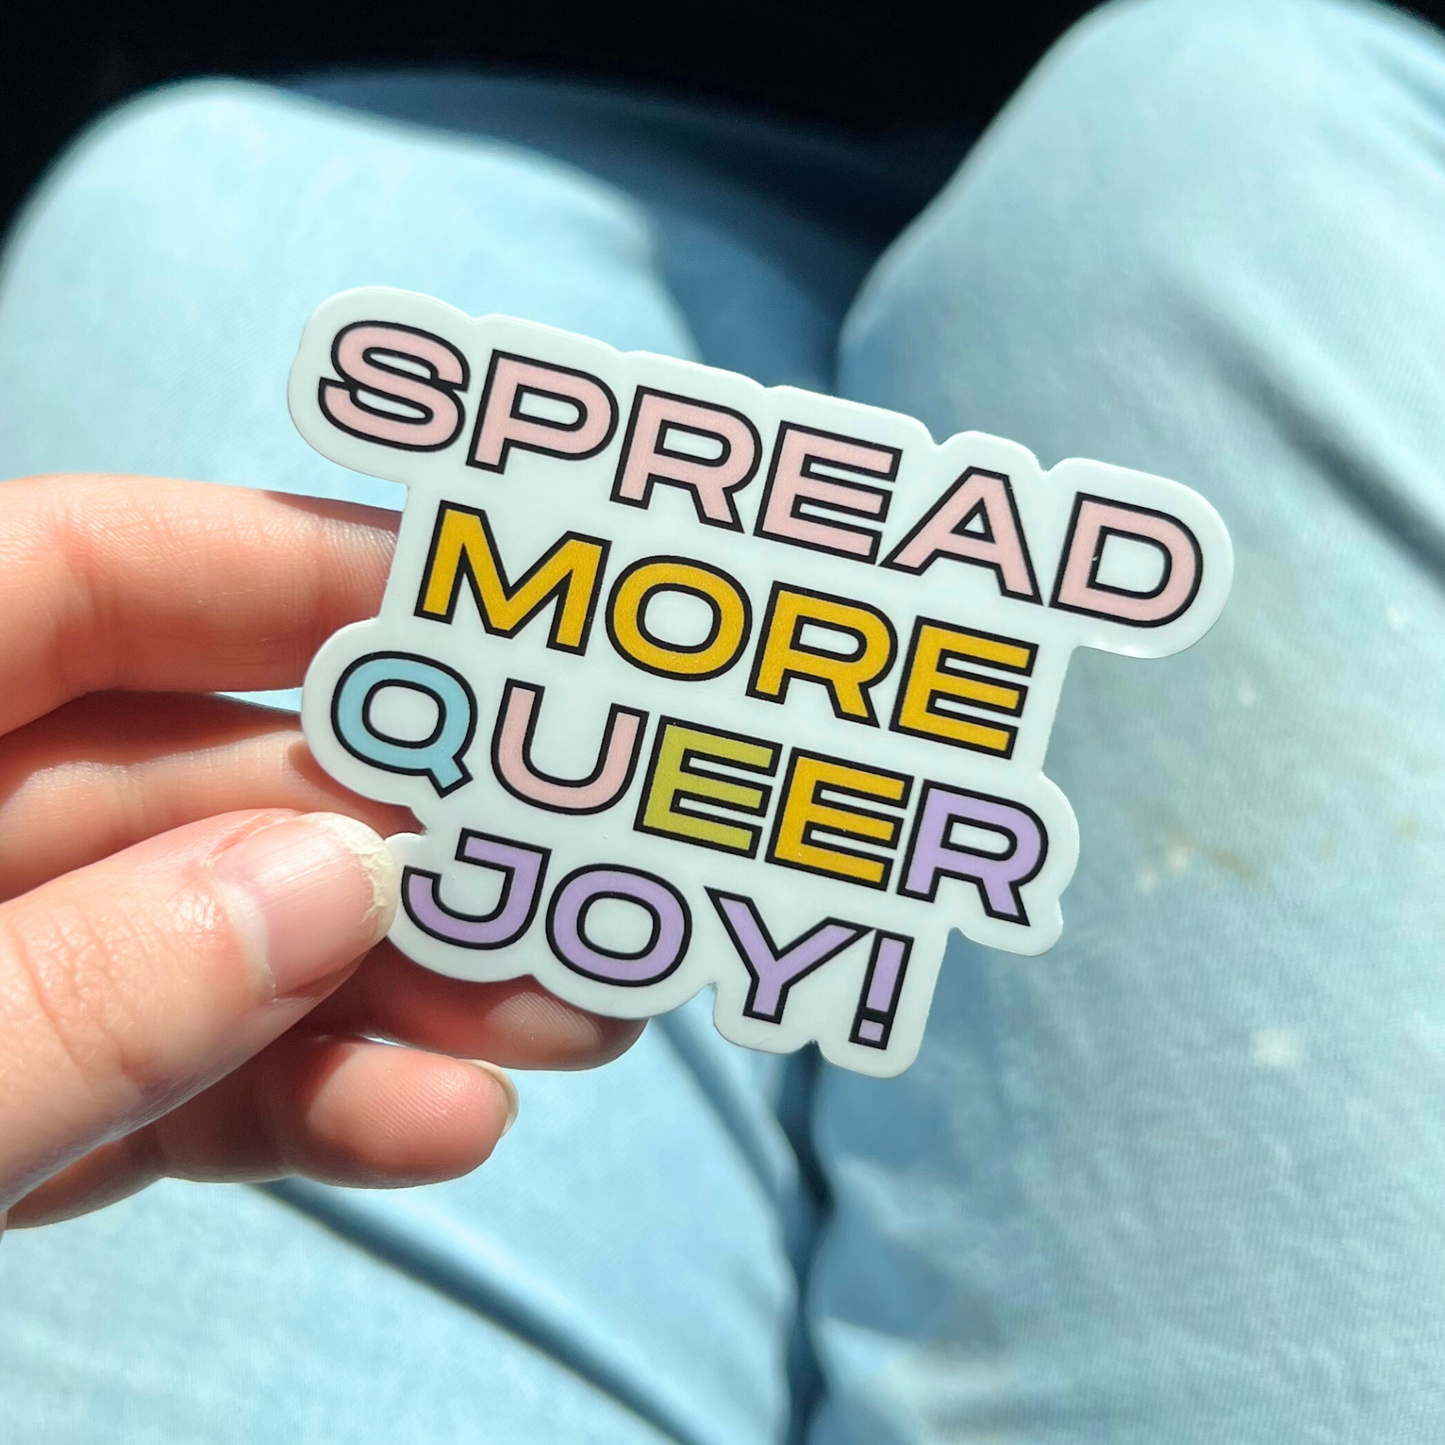 Spread More Queer Joy Sticker